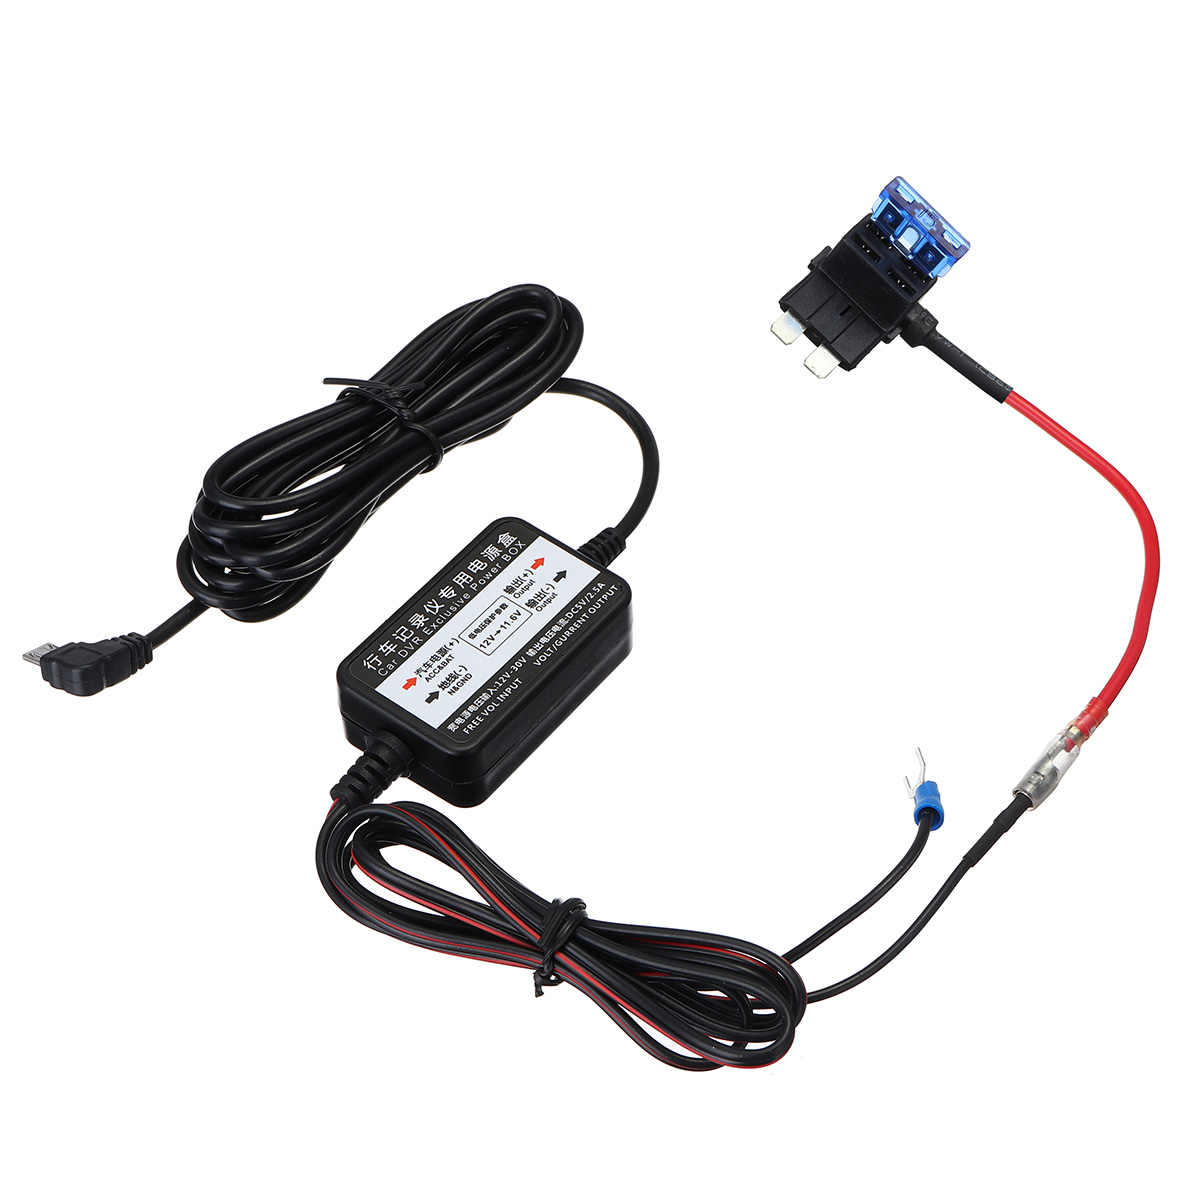 

Micro USB Авто Видеорегистратор Эксклюзивная мощность Коробка Адаптер зарядного устройства Hard Провод Преобразователь Набор